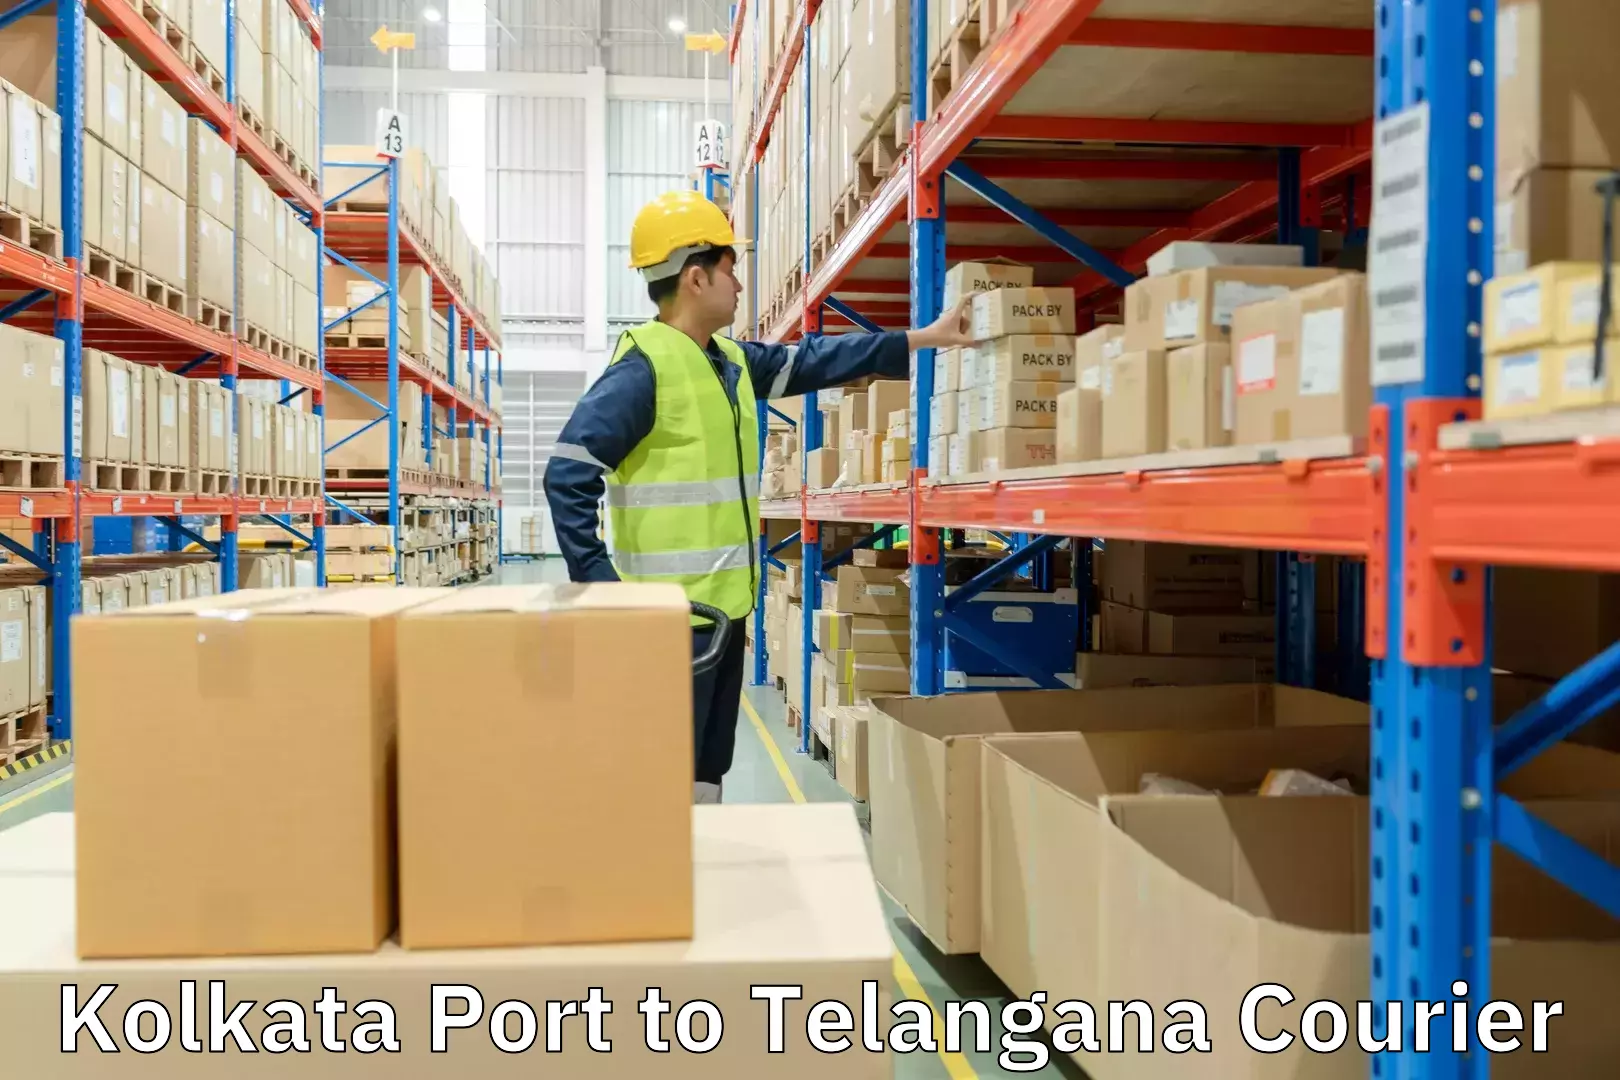 Efficient package consolidation Kolkata Port to Telangana